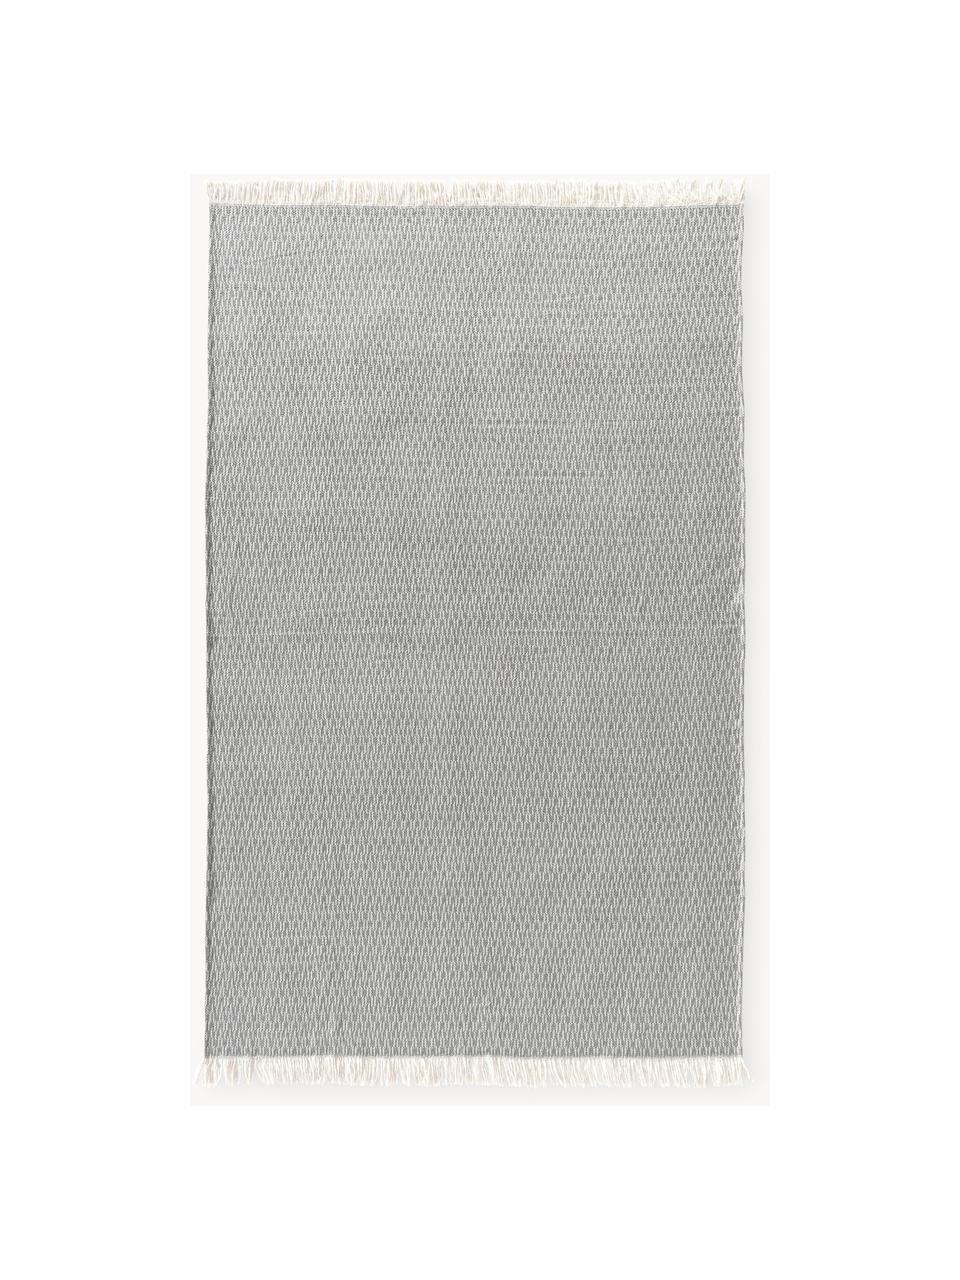 Koc z frędzlami Alistair, 80% bawełna, 20% poliakryl, Ciemny szary, biały, S 130 x D 170 cm